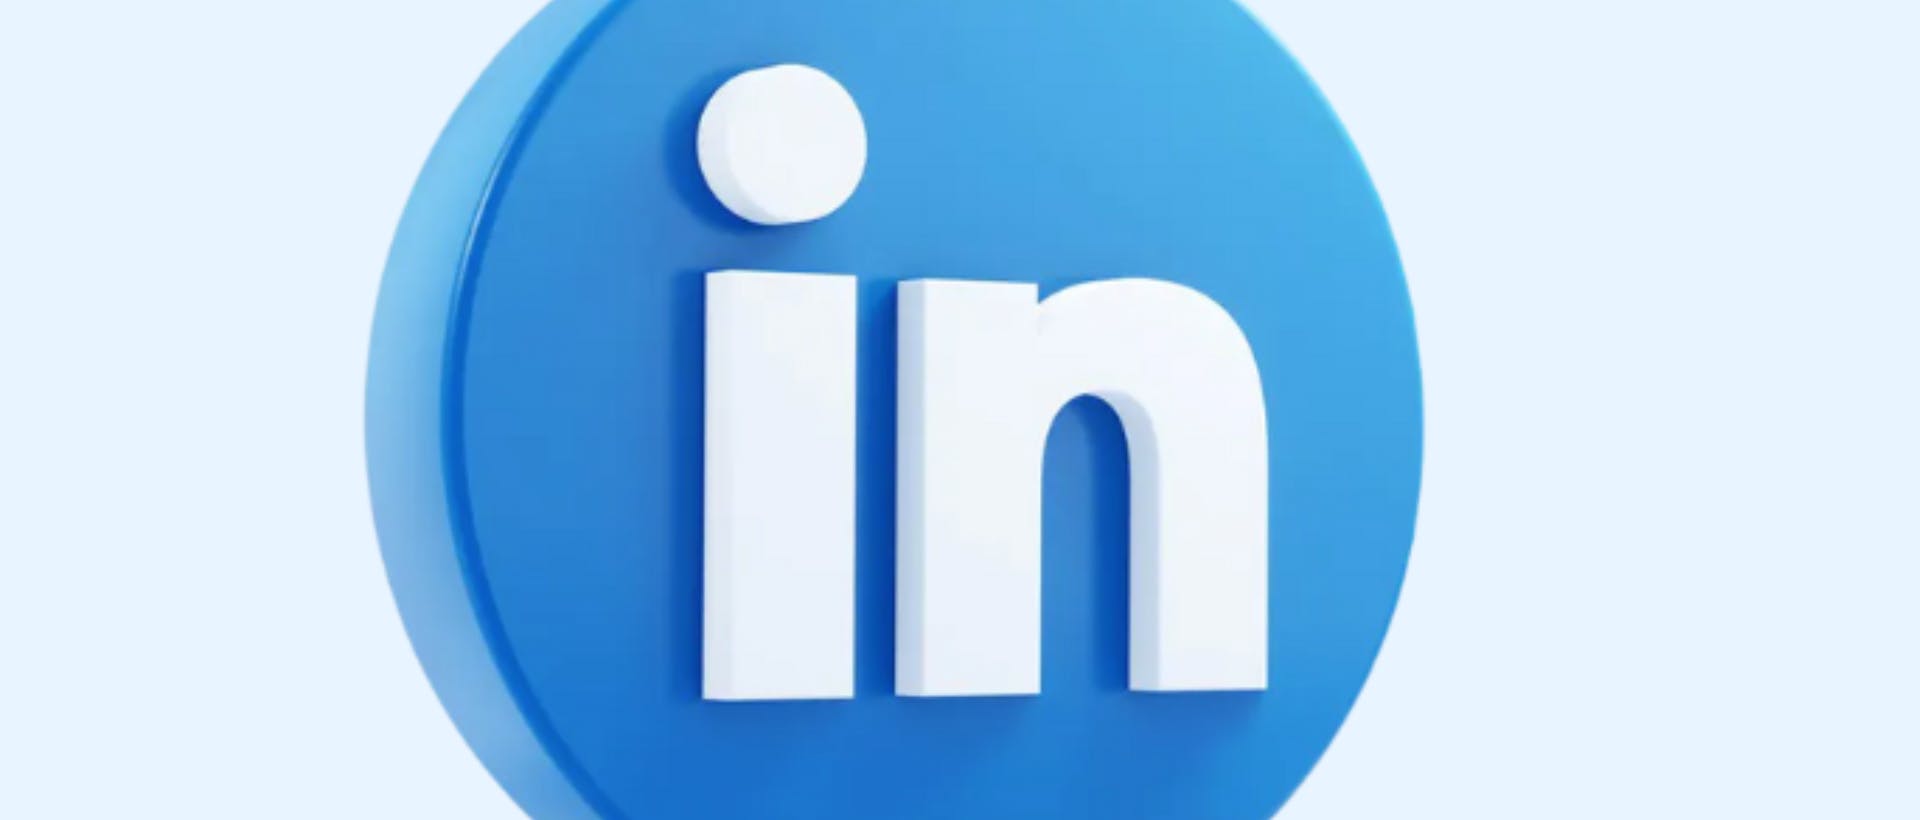 Das Bild hat einen hellblauen Hintergrund und in der Mitte ist das LinkedIn Logo zu sehen.